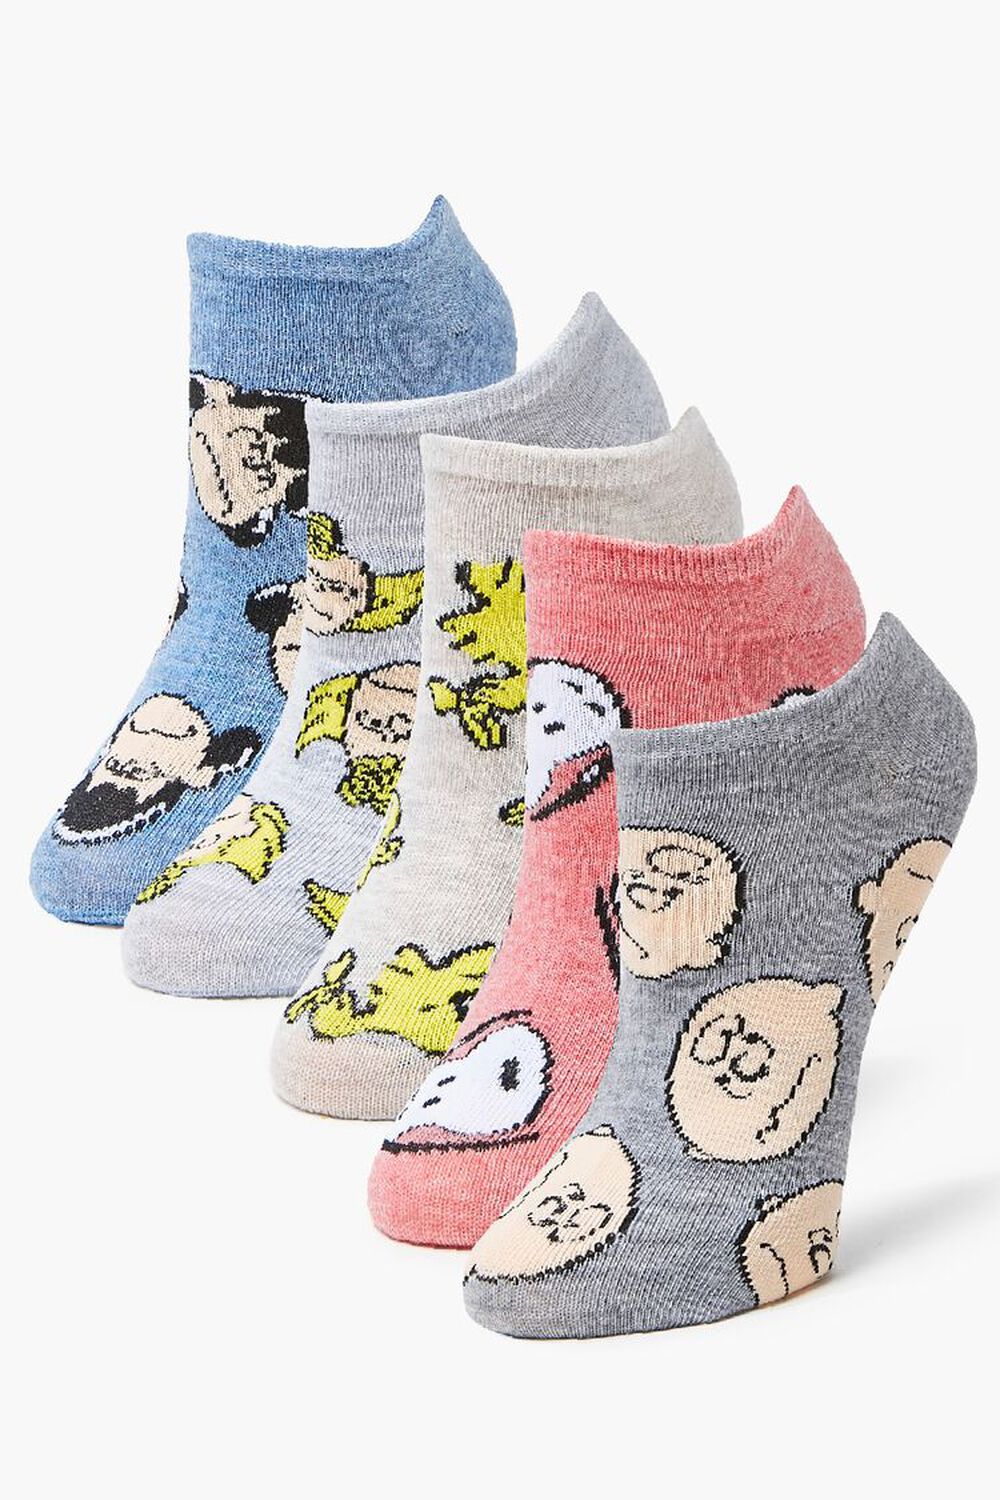 Peanuts Gang Ankle Socks, image 1